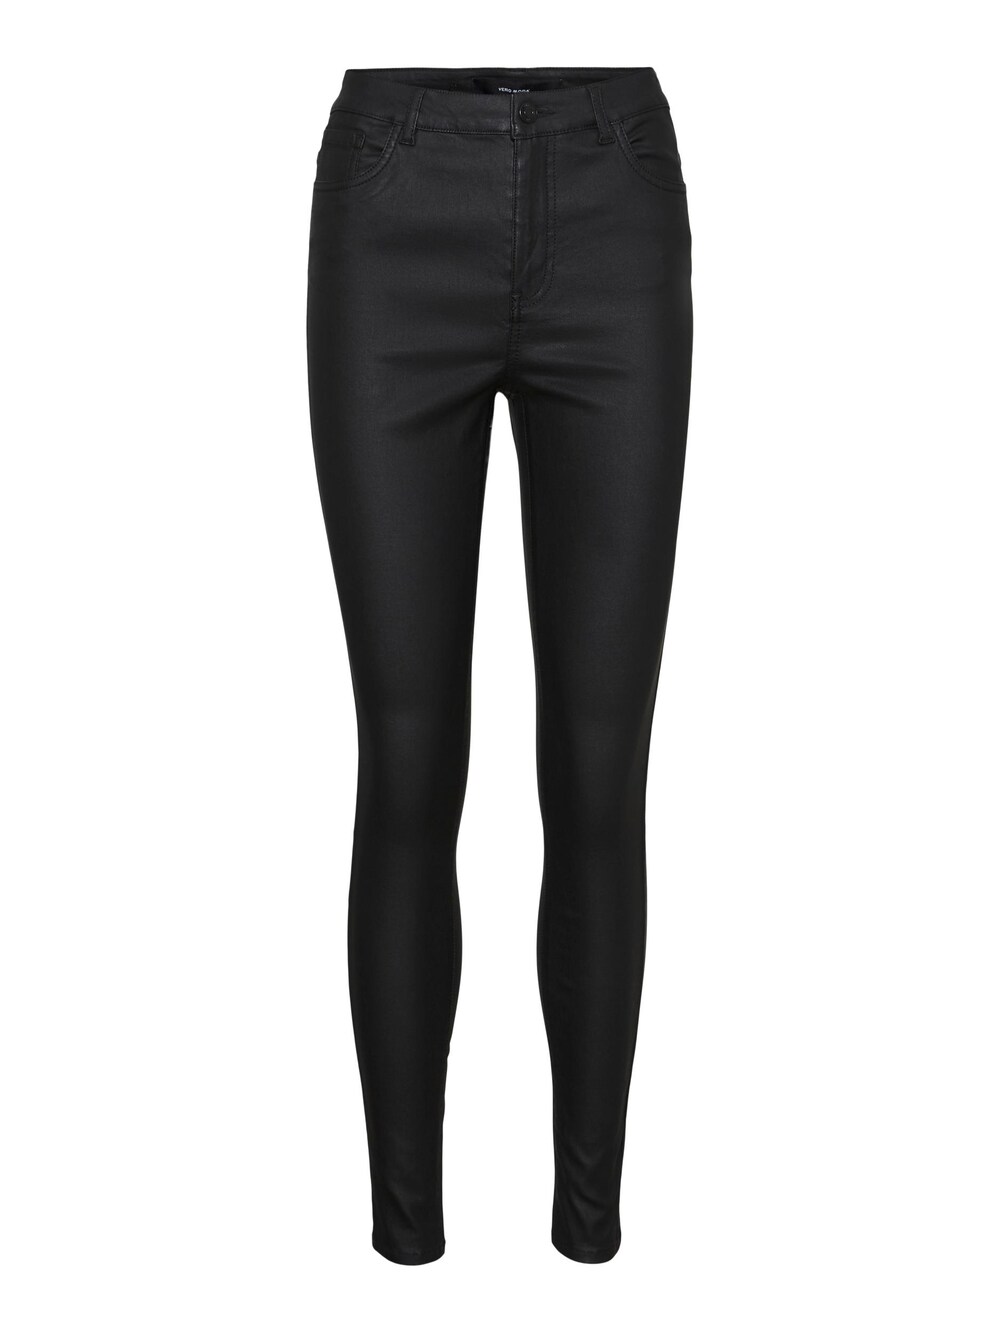 Узкие брюки Vero Moda Sophia, черный блузка sophia с цветочным принтом vero moda черный